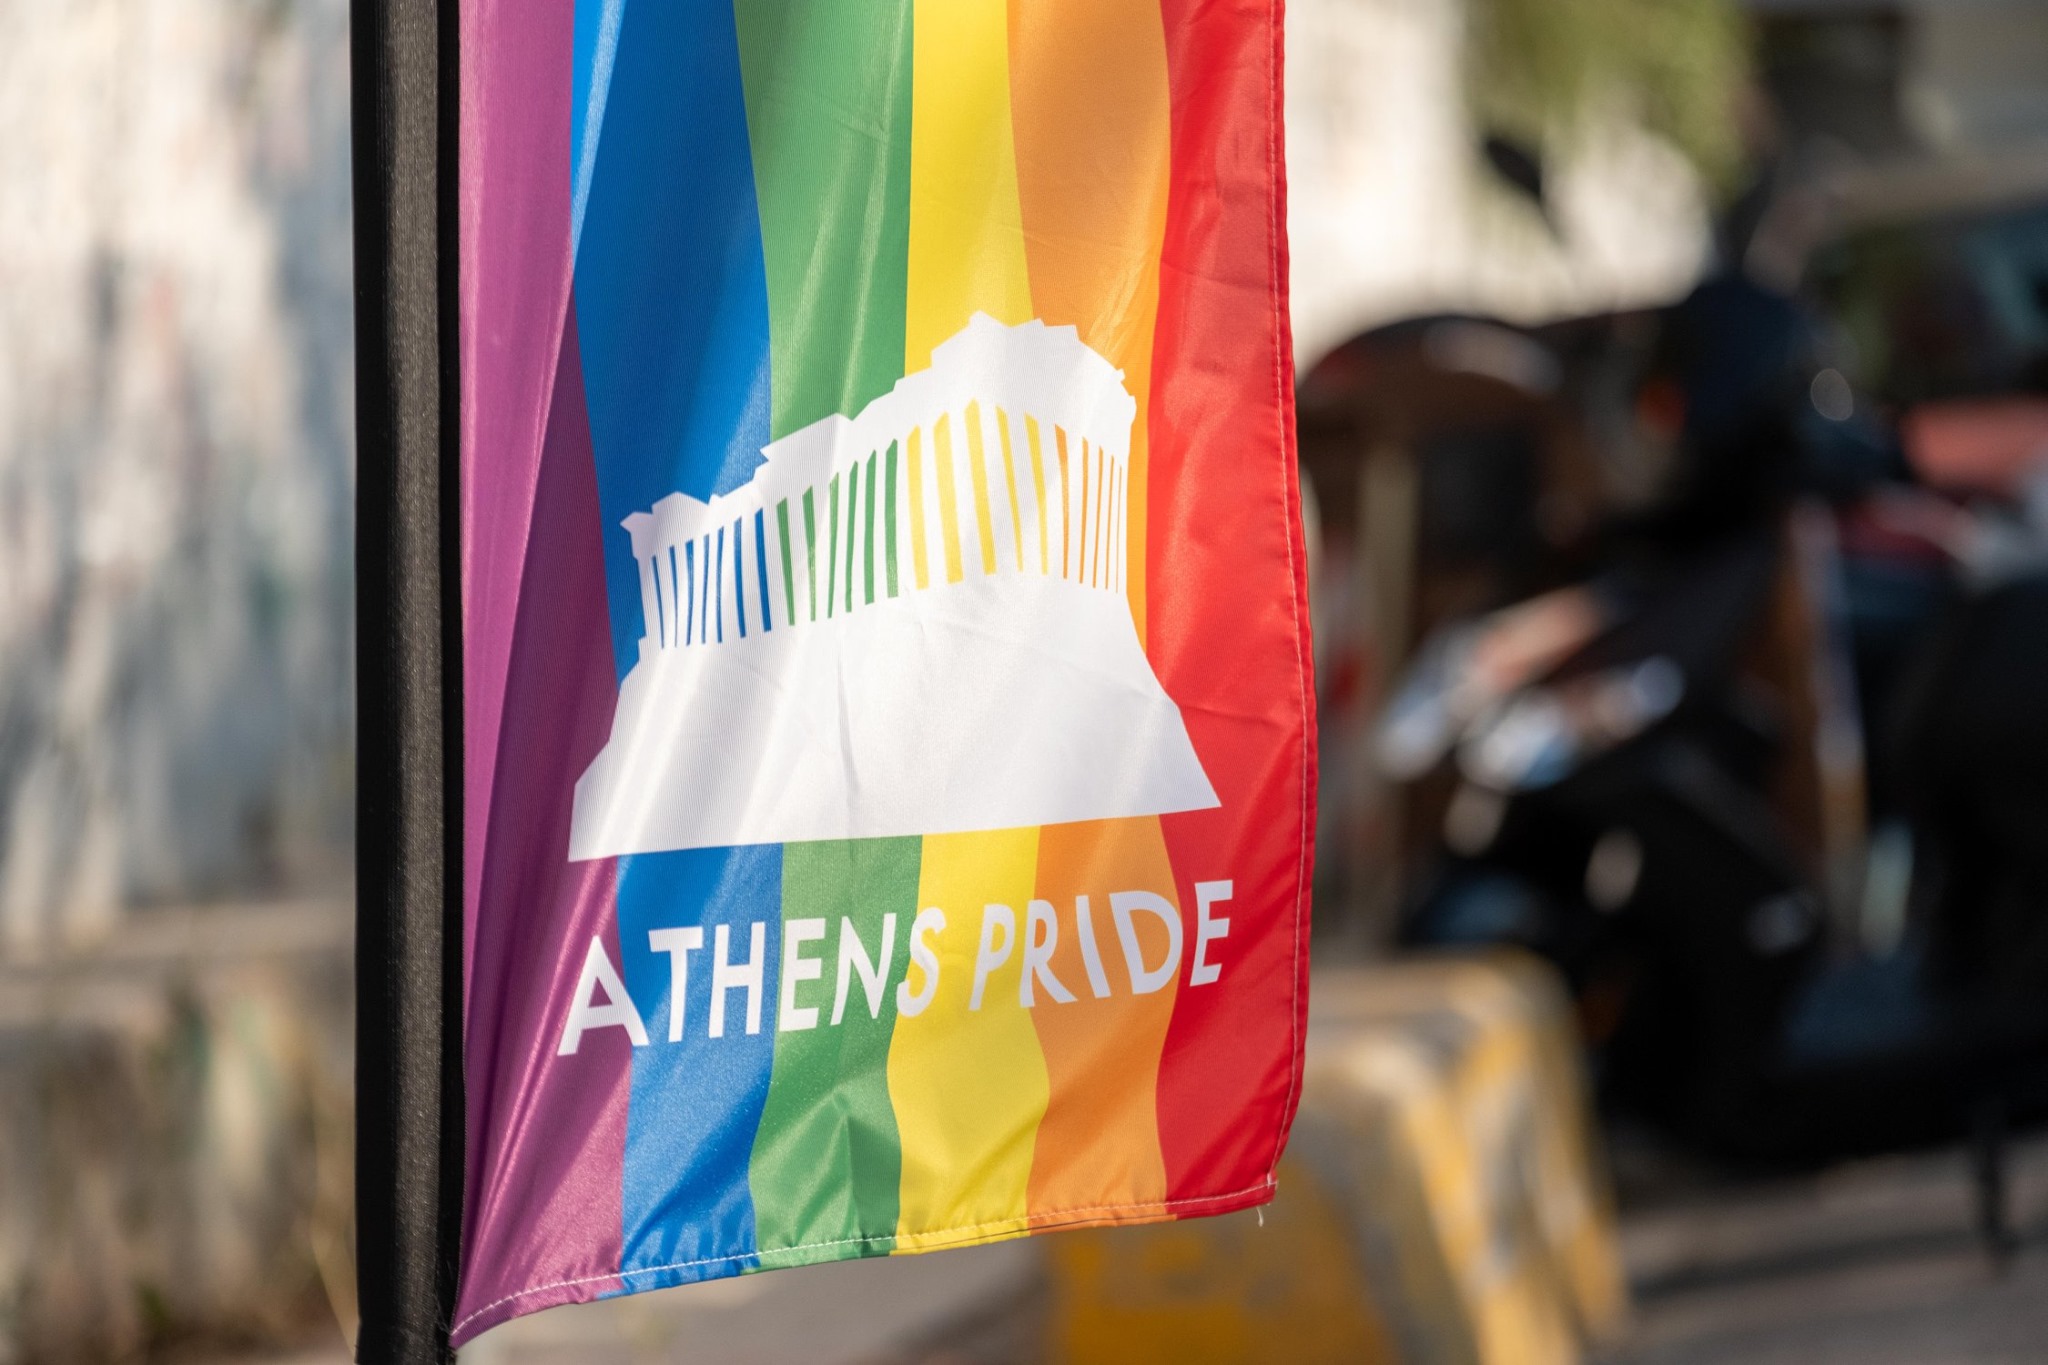 To Σάββατο 11 Σεπτεμβρίου το Athens Pride 2021